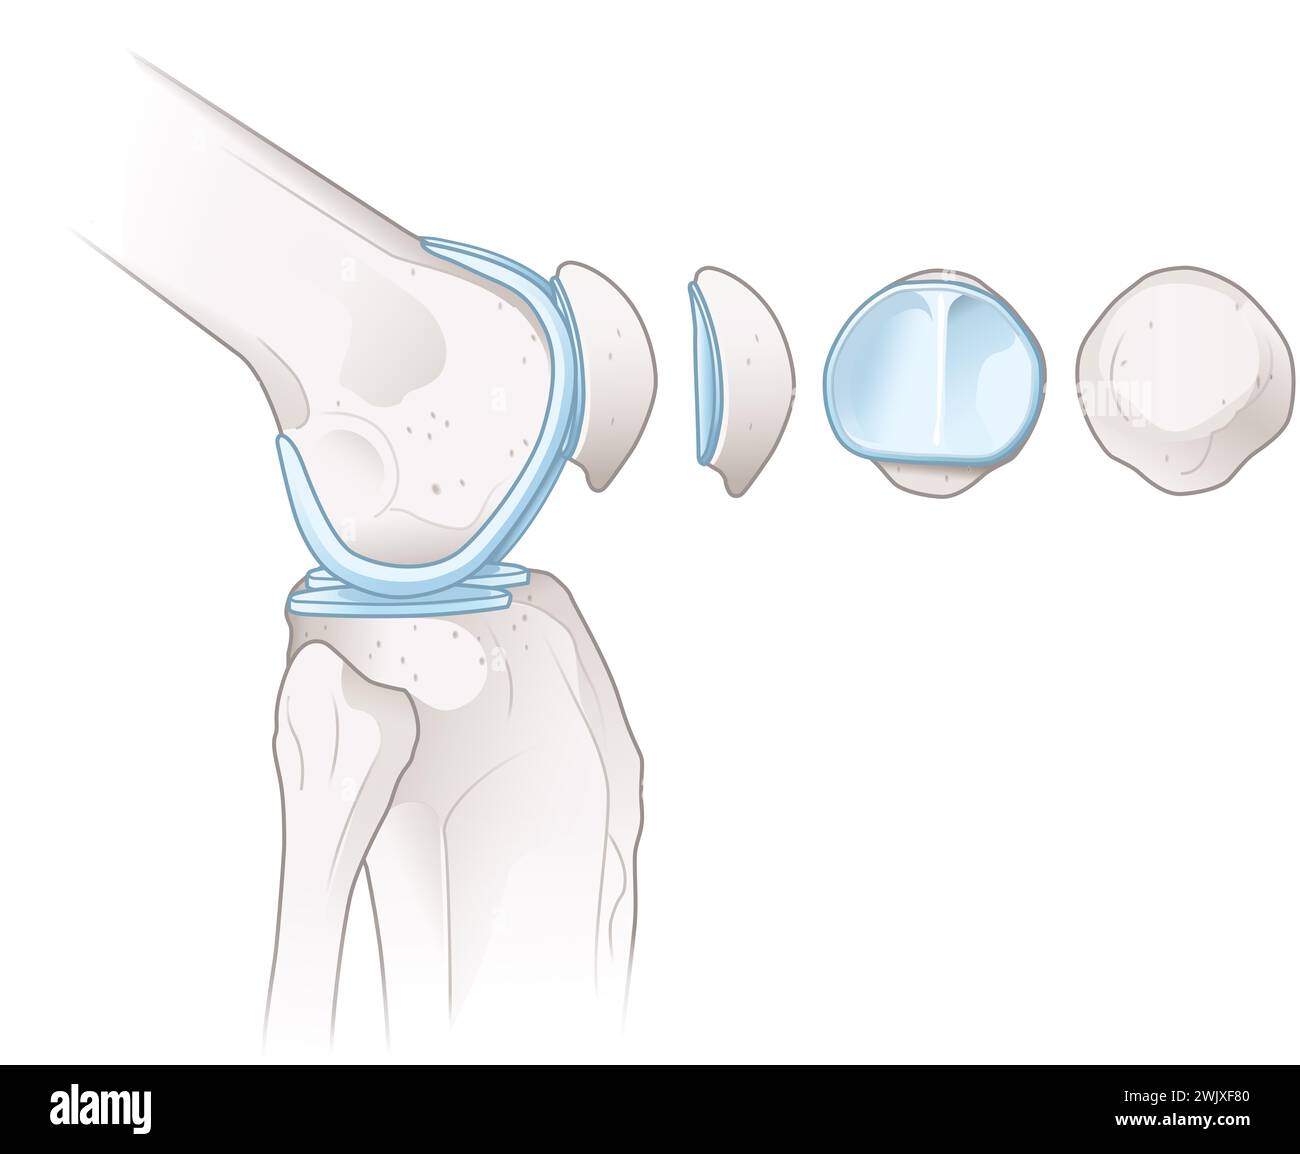 illustrazione che mostra le ossa e la cartilagine di un'articolazione del ginocchio. Foto Stock